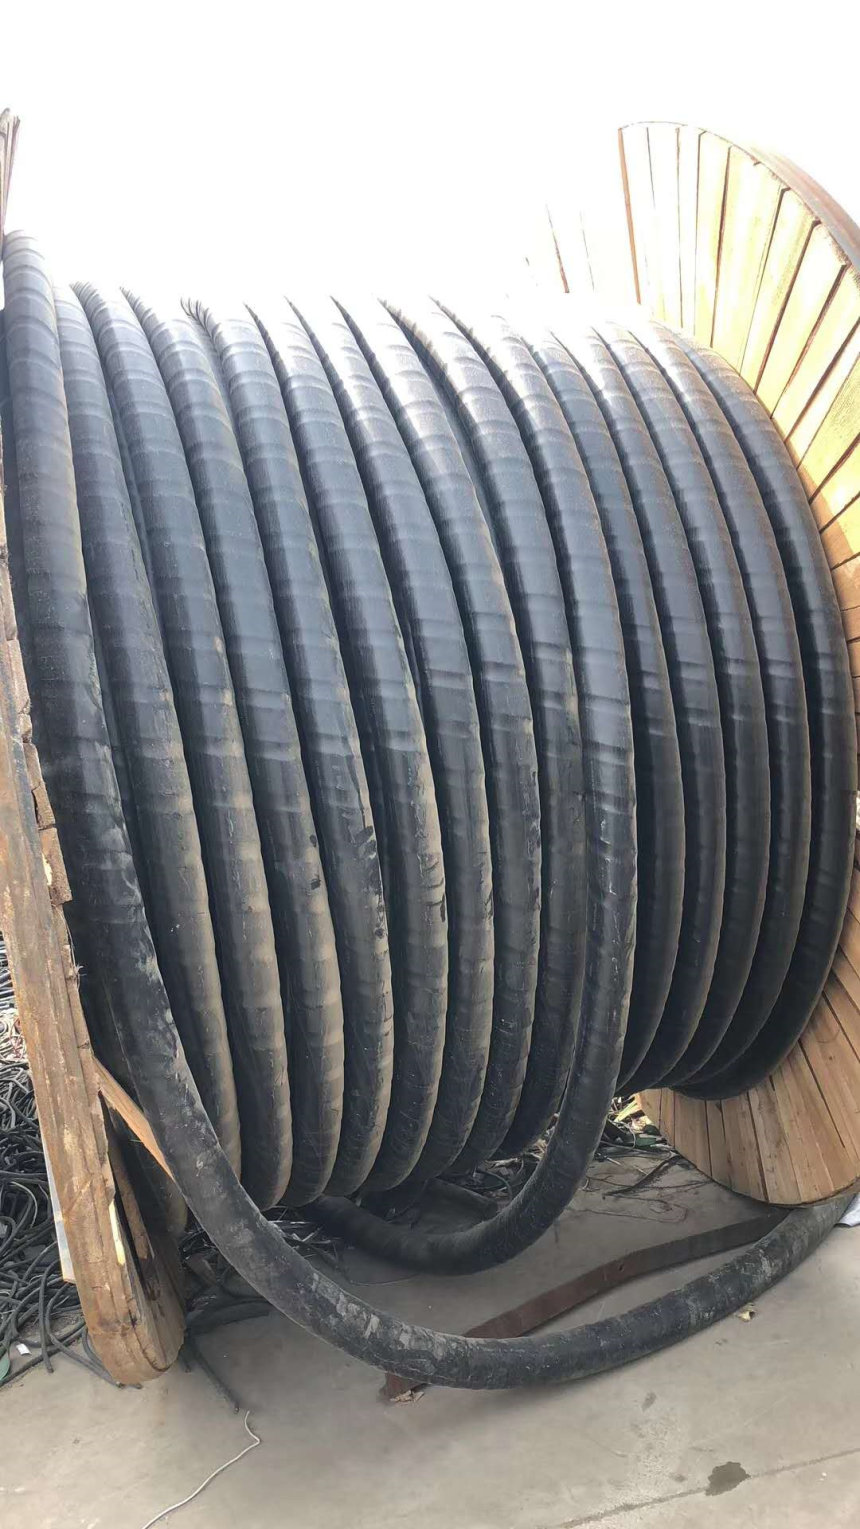 荆州市废旧电缆回收多少钱一米 全天候服务